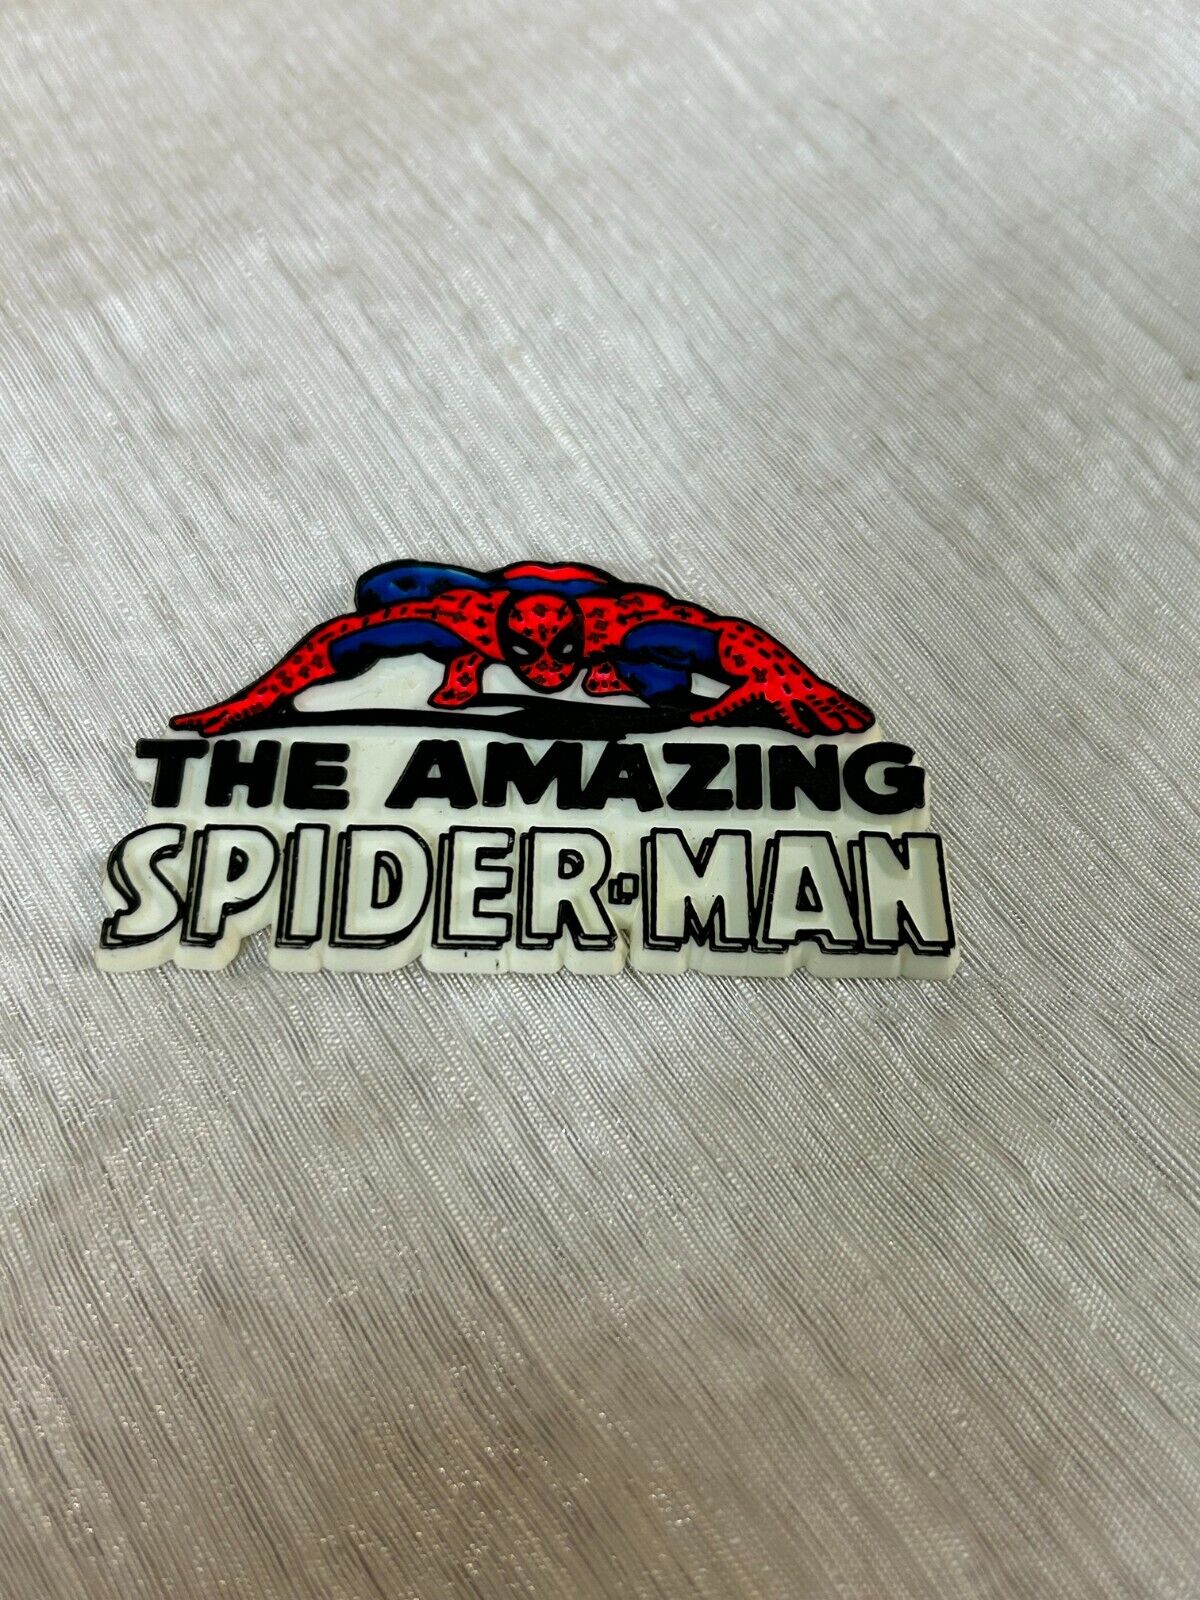 NEW Marvel Amazing Spiderman 1970's Vintage Magnet NOS D Peter Parker